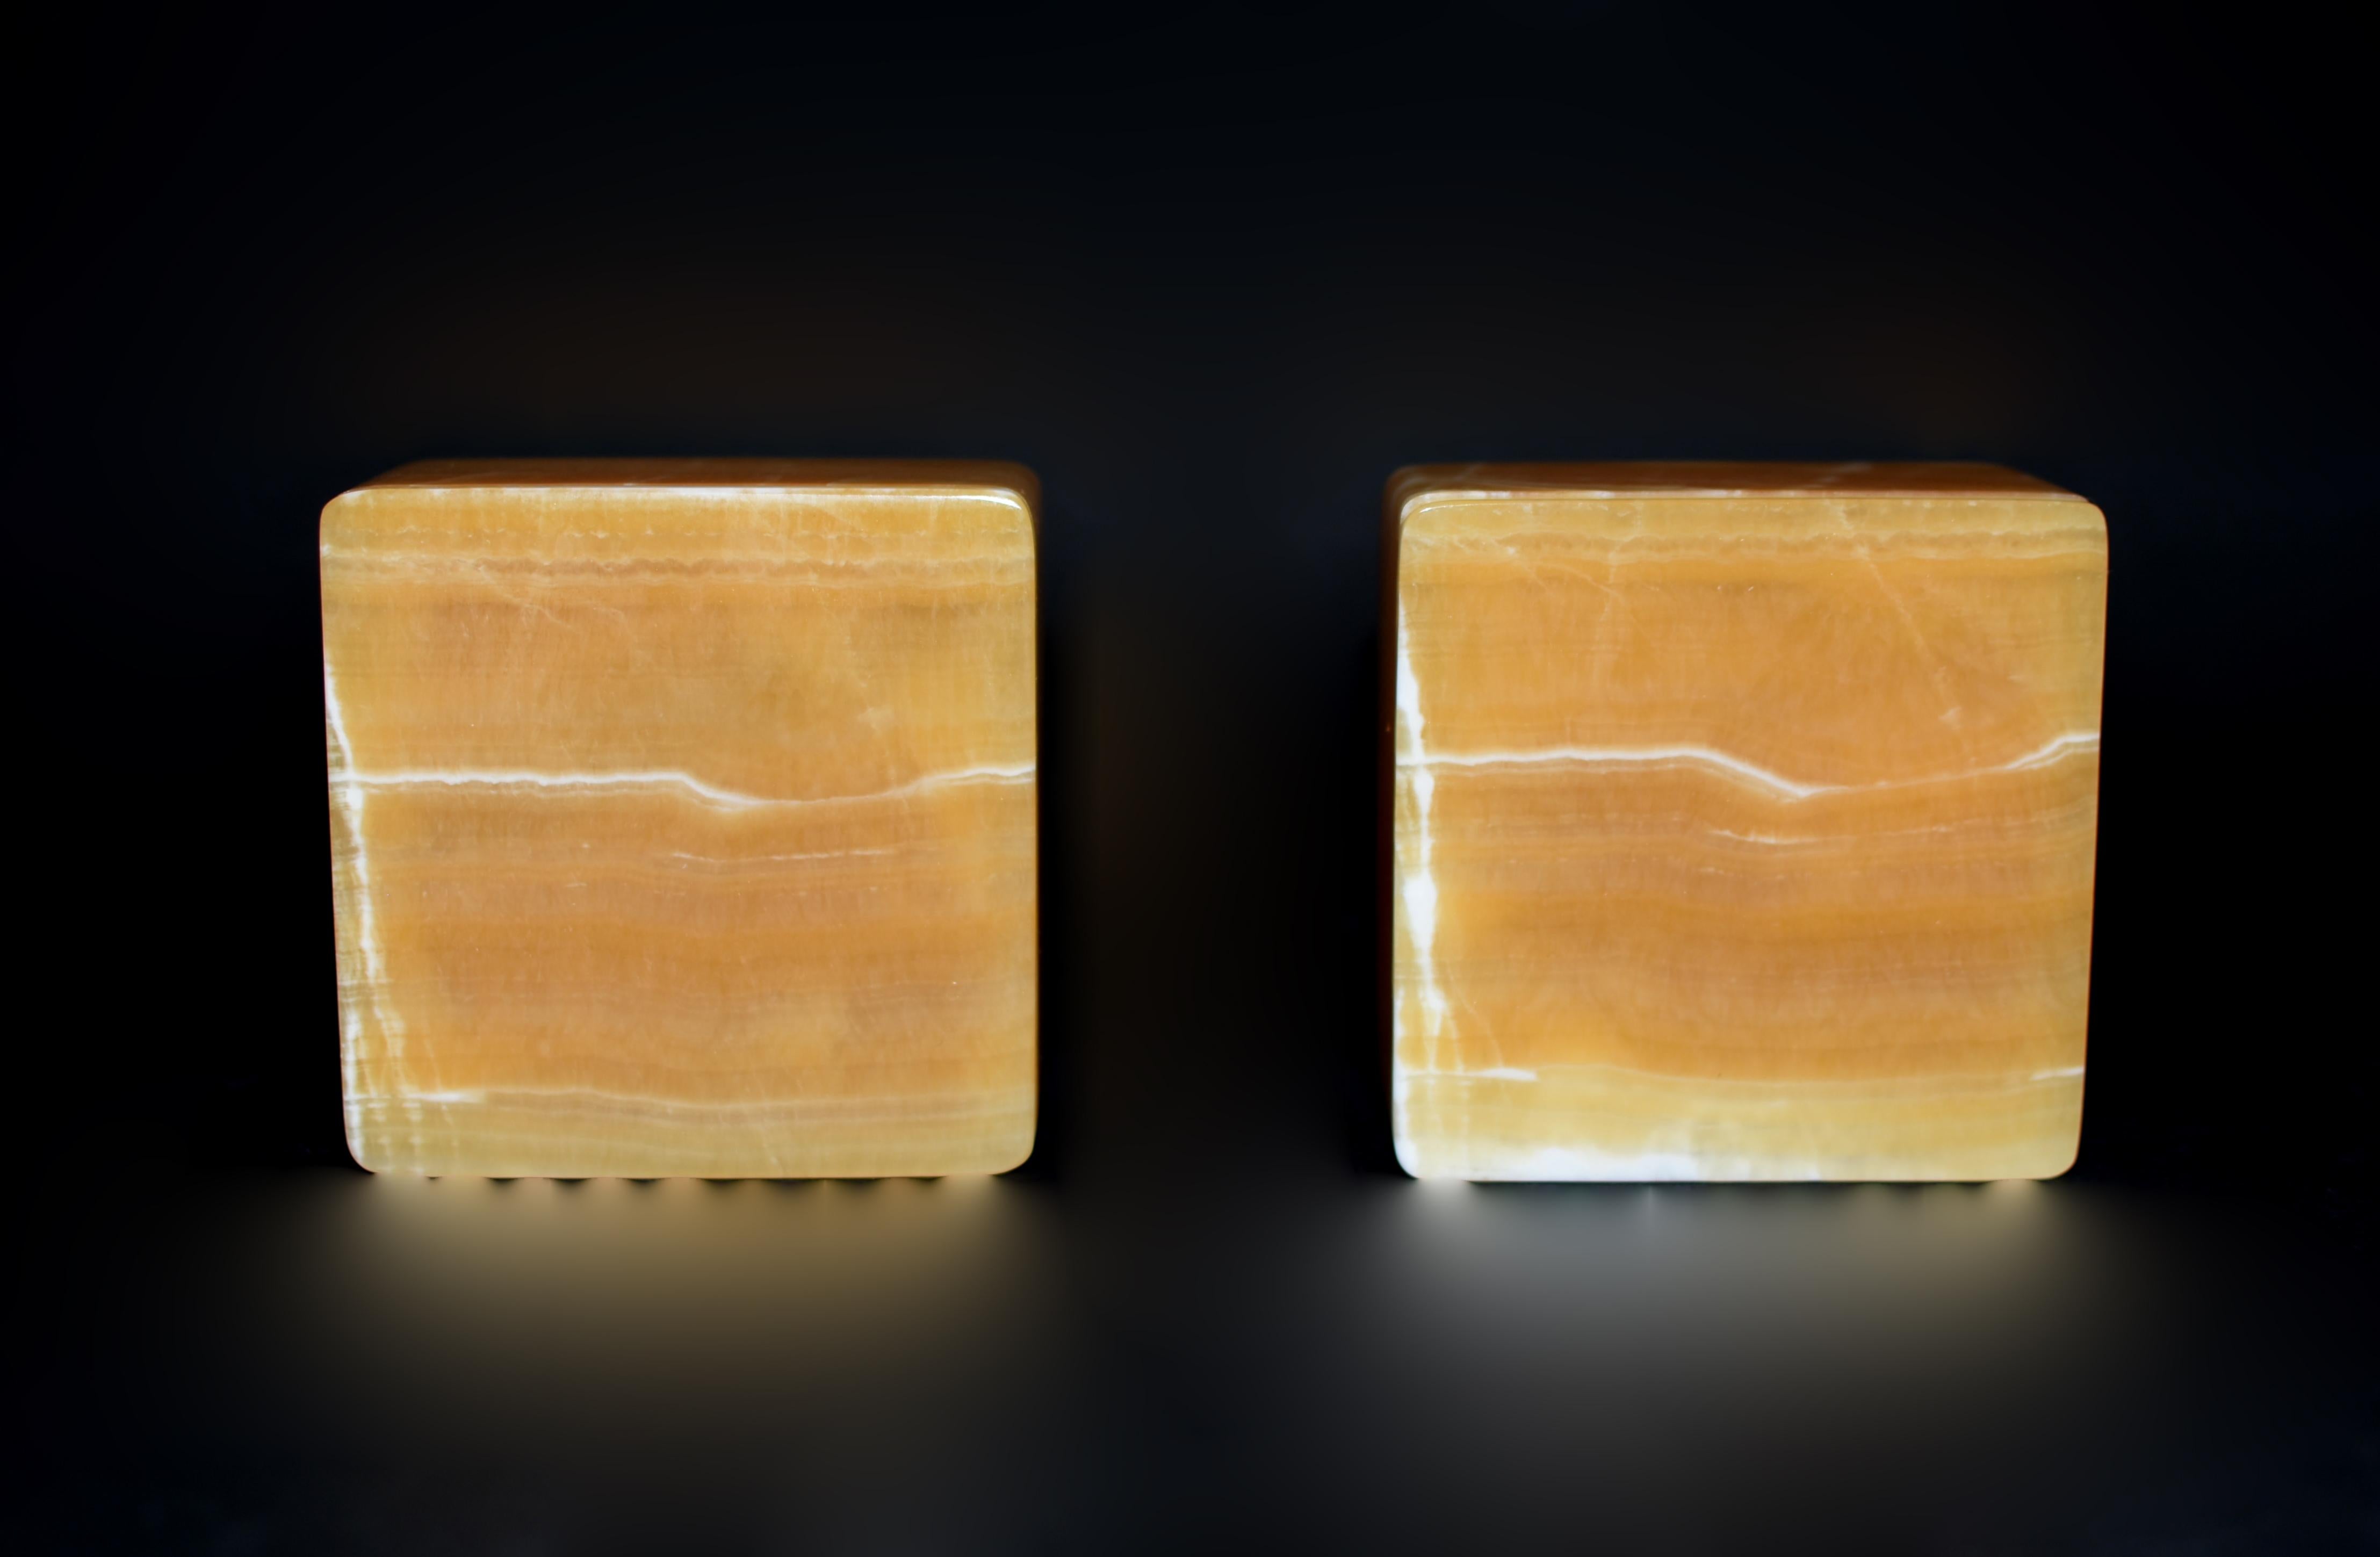 Cette paire exquise est fabriquée à partir d'onyx de calcite miel très rare provenant du Pakistan, en utilisant uniquement des planches uniques (dalle complète d'une seule pièce) de pierres pour tous les côtés des boîtes. Fabriqués à la main par des